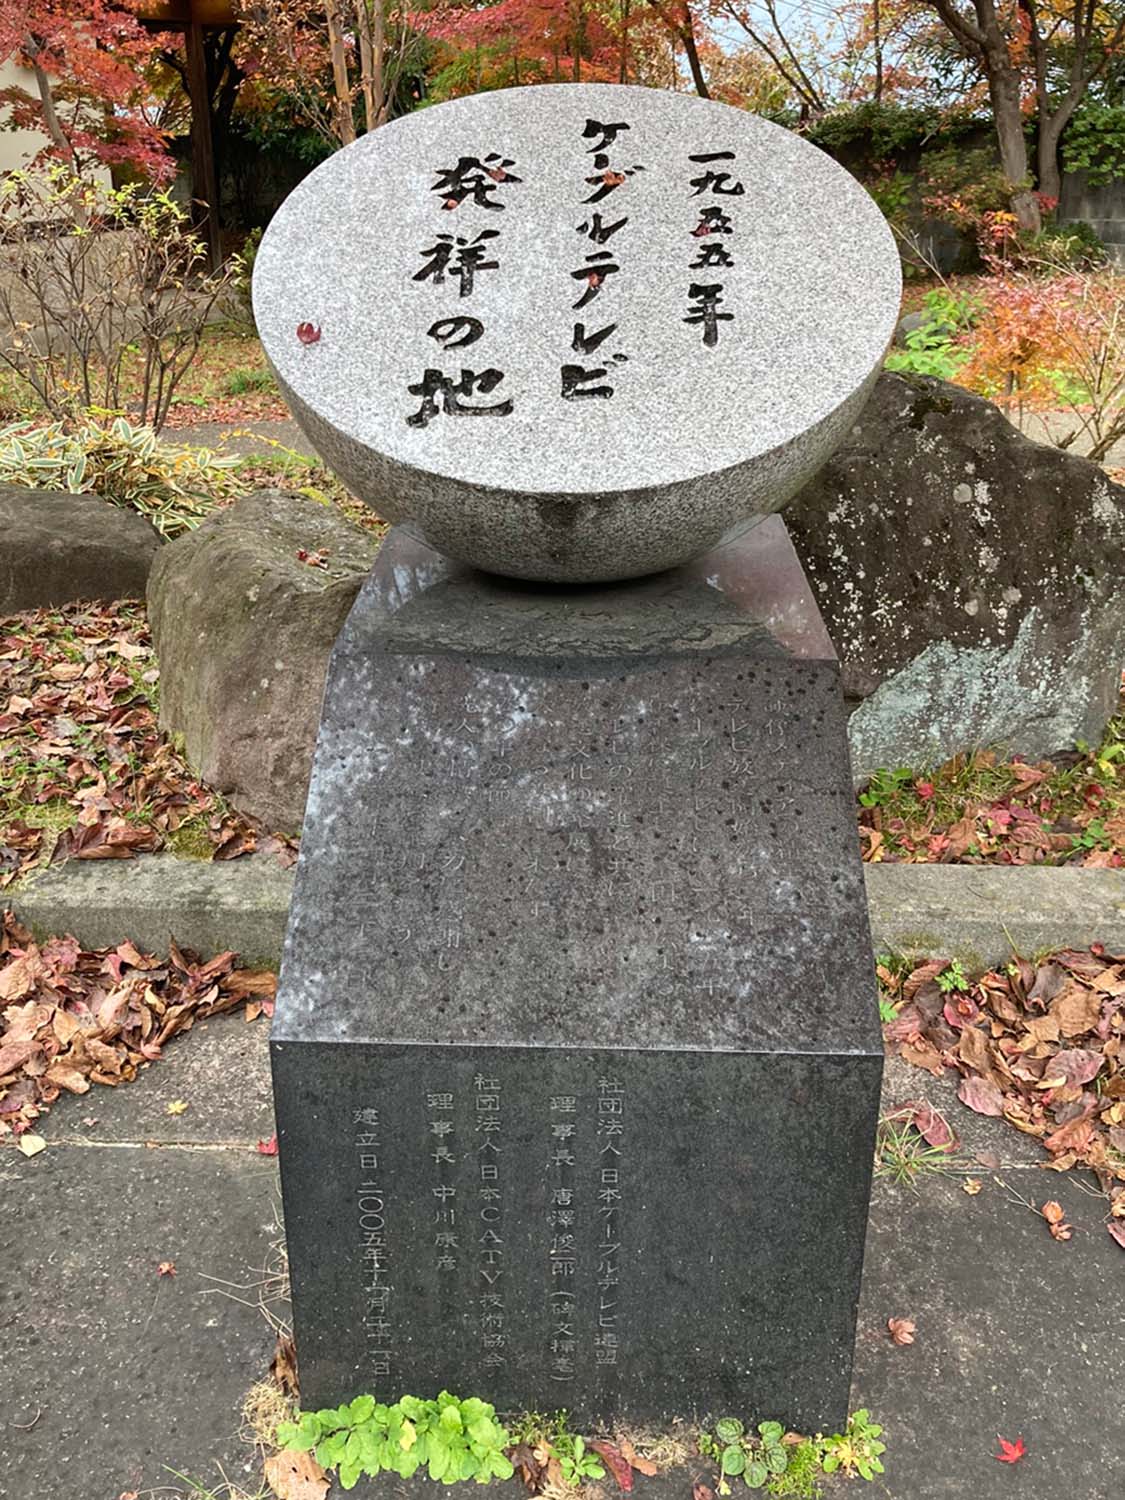 パラボラアンテナの形をした碑。伊香保温泉は地上波が届きにくく、日本で初めてケーブルテレビが設置されたとのこと。